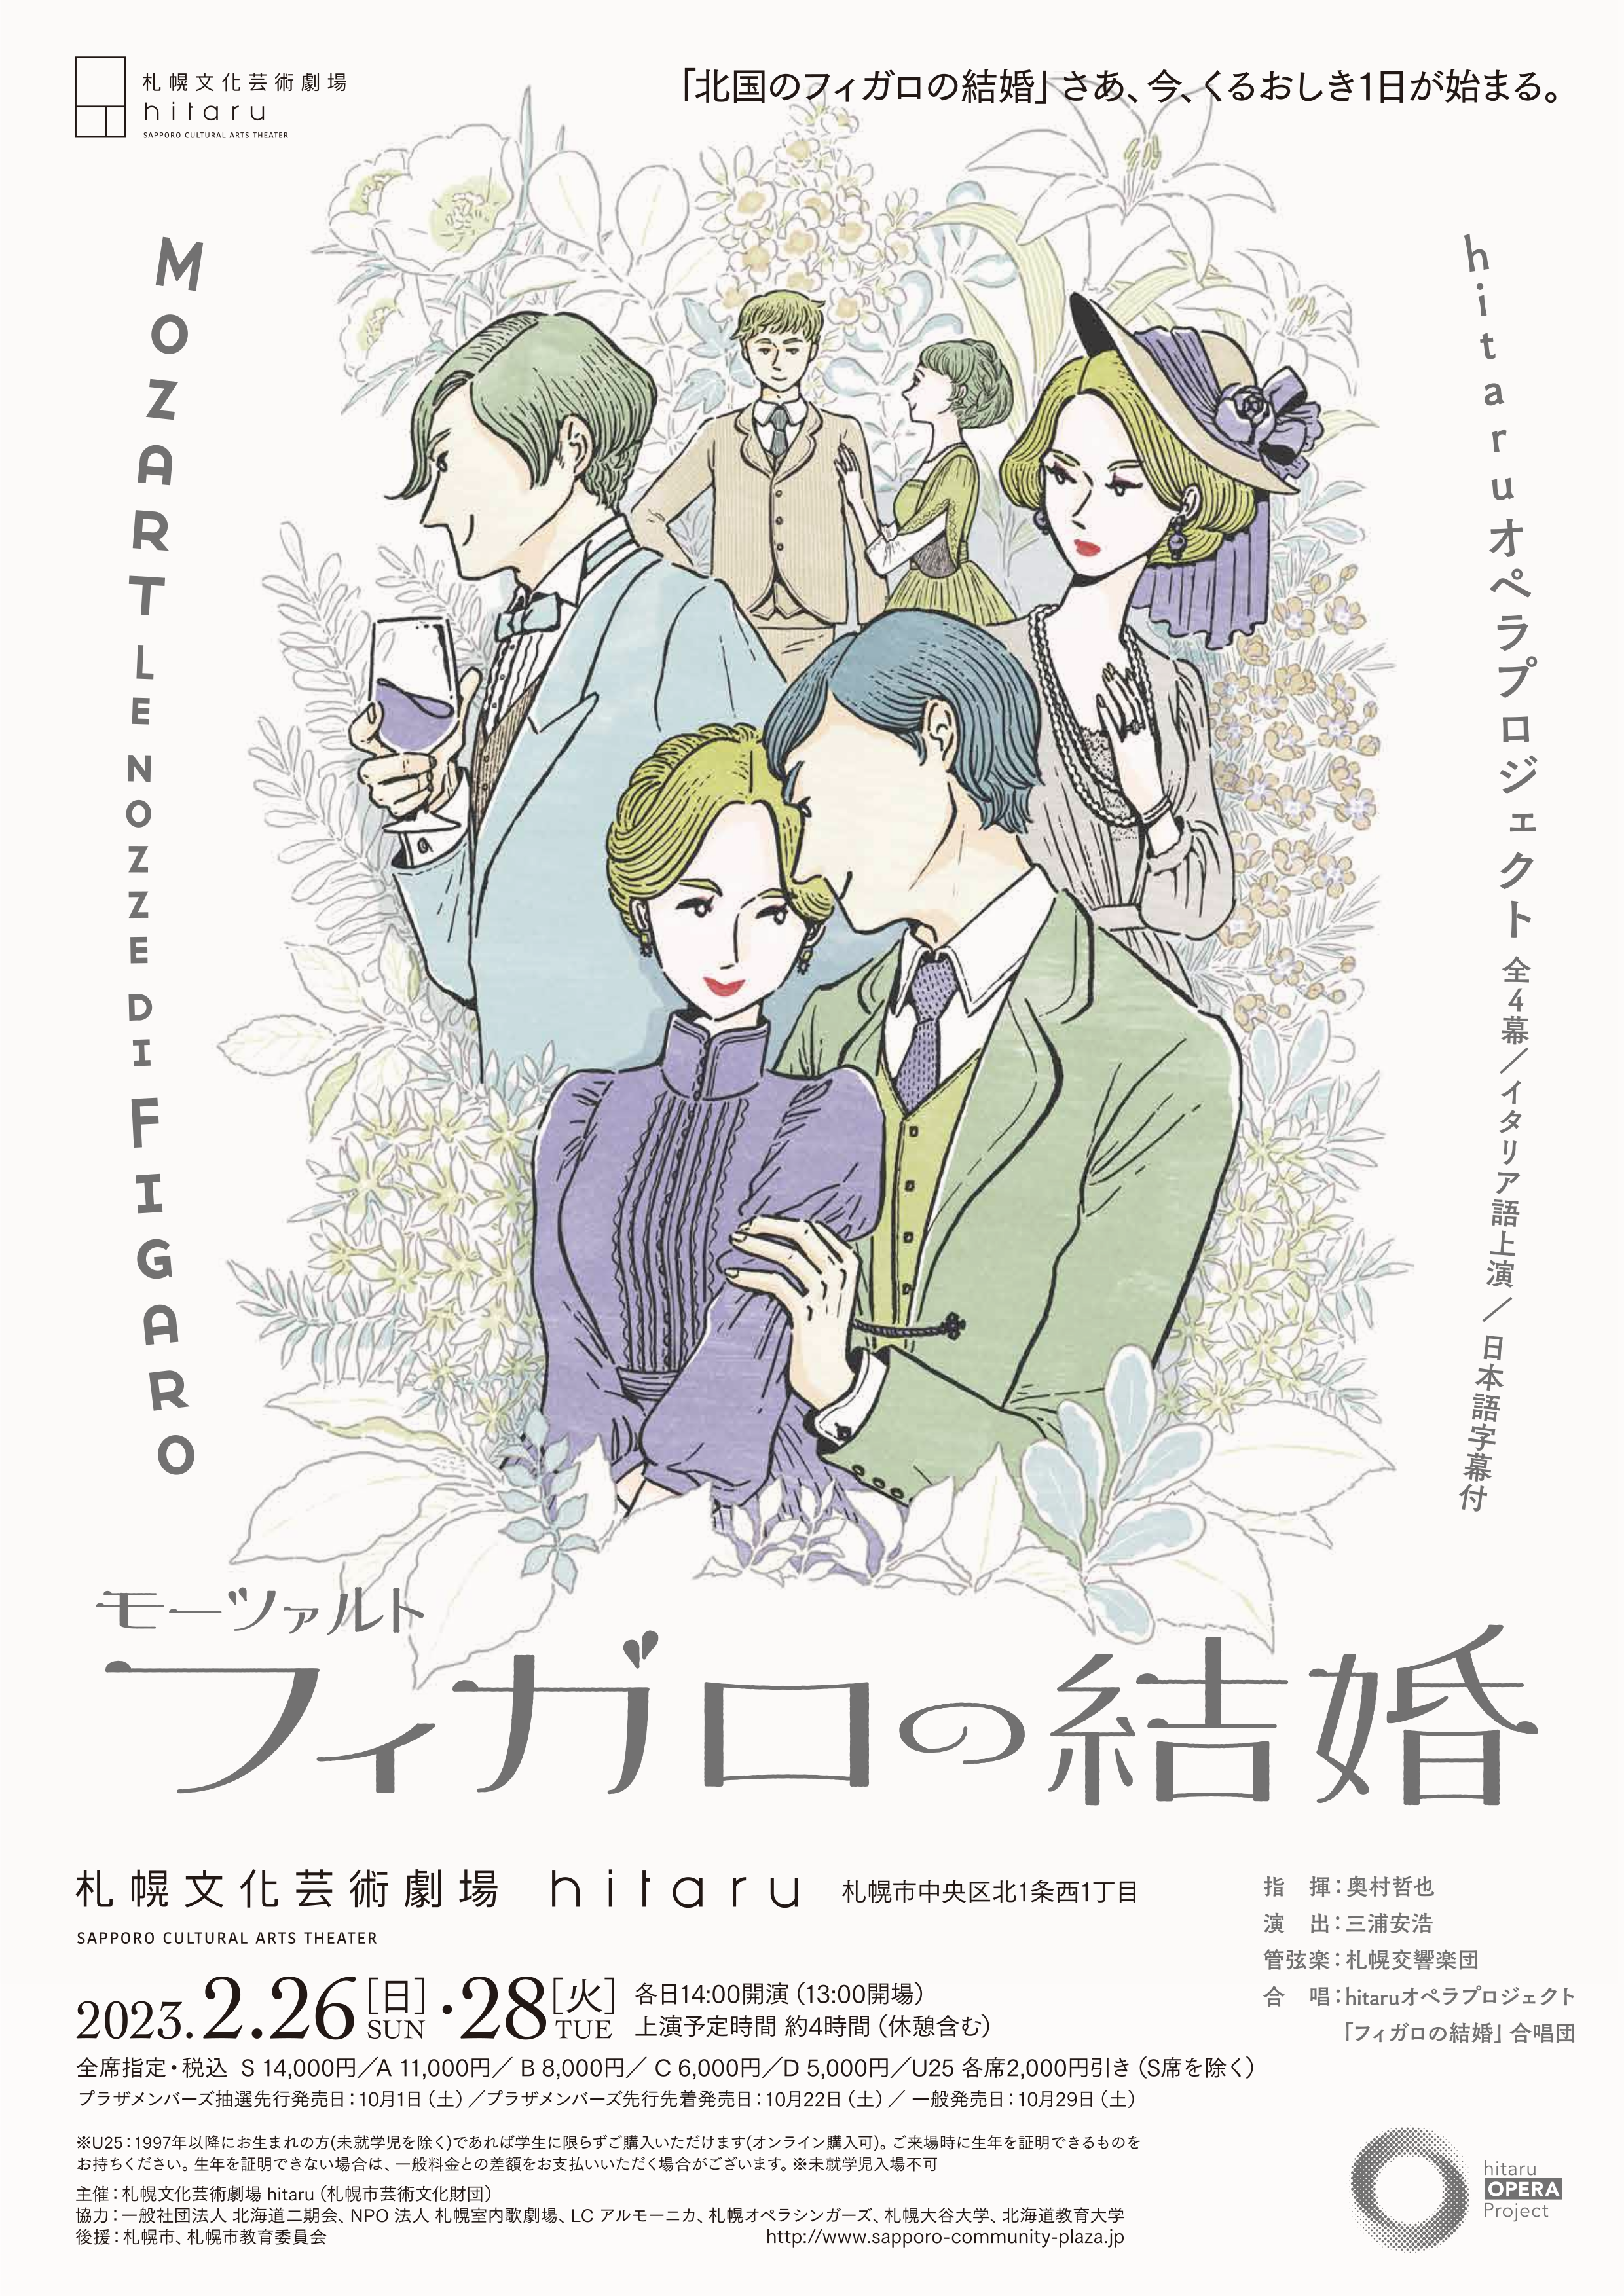 hitaruオペラプロジェクト モーツァルト「フィガロの結婚」(全4幕・イタリア語上演、日本語字幕付)イメージ写真